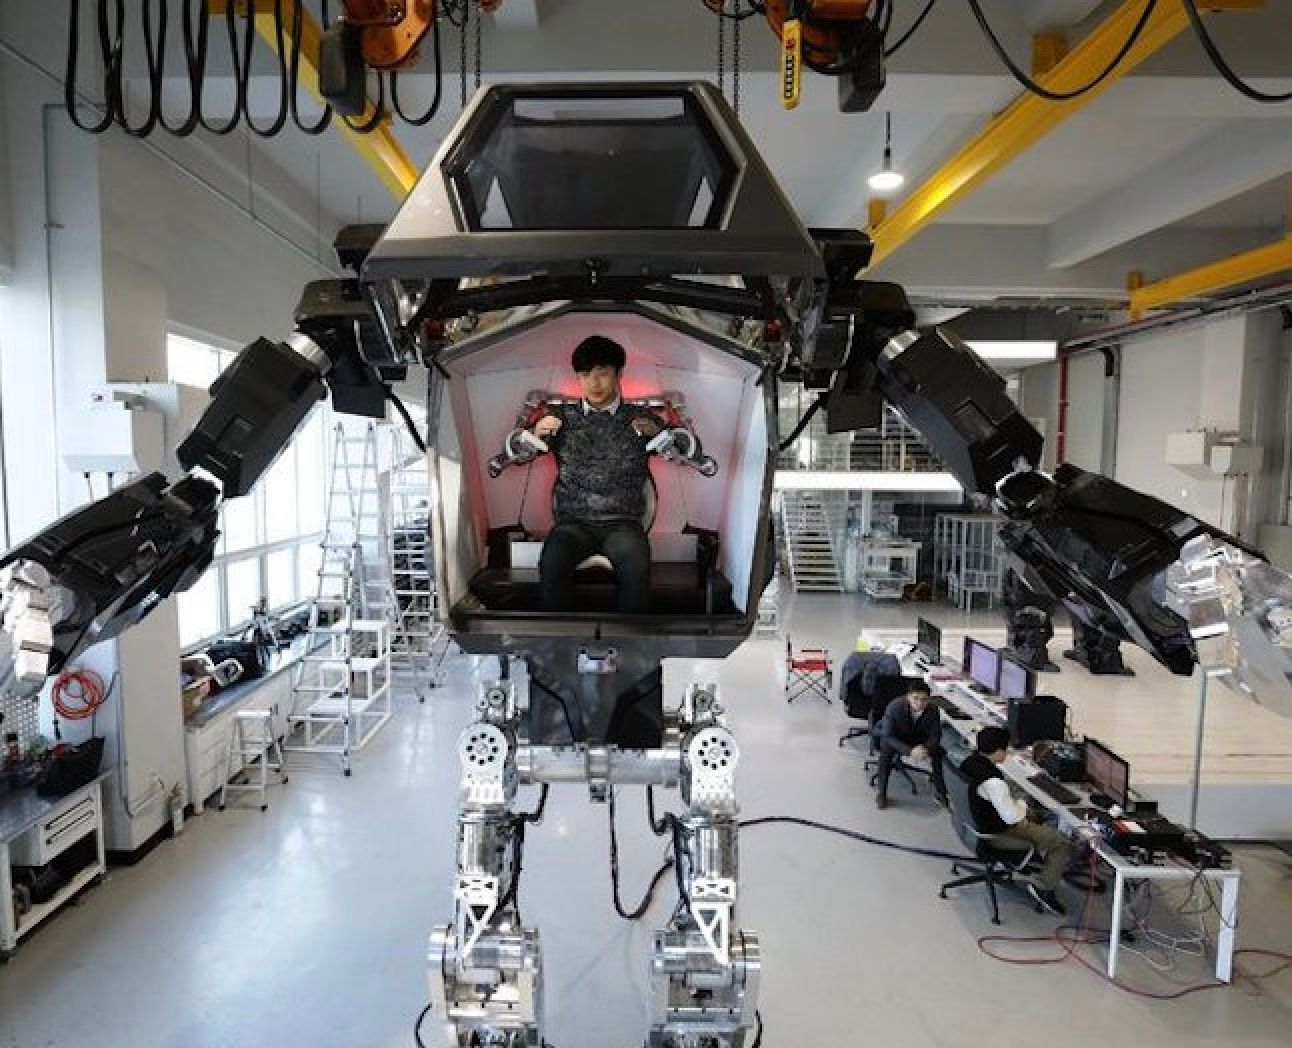 The Man Machine. De teknologiske skridt, menneskeheden tager, kræver store overvejelser moralsk og etisk. Kilde: Chung Sung-Jun/Getty Images